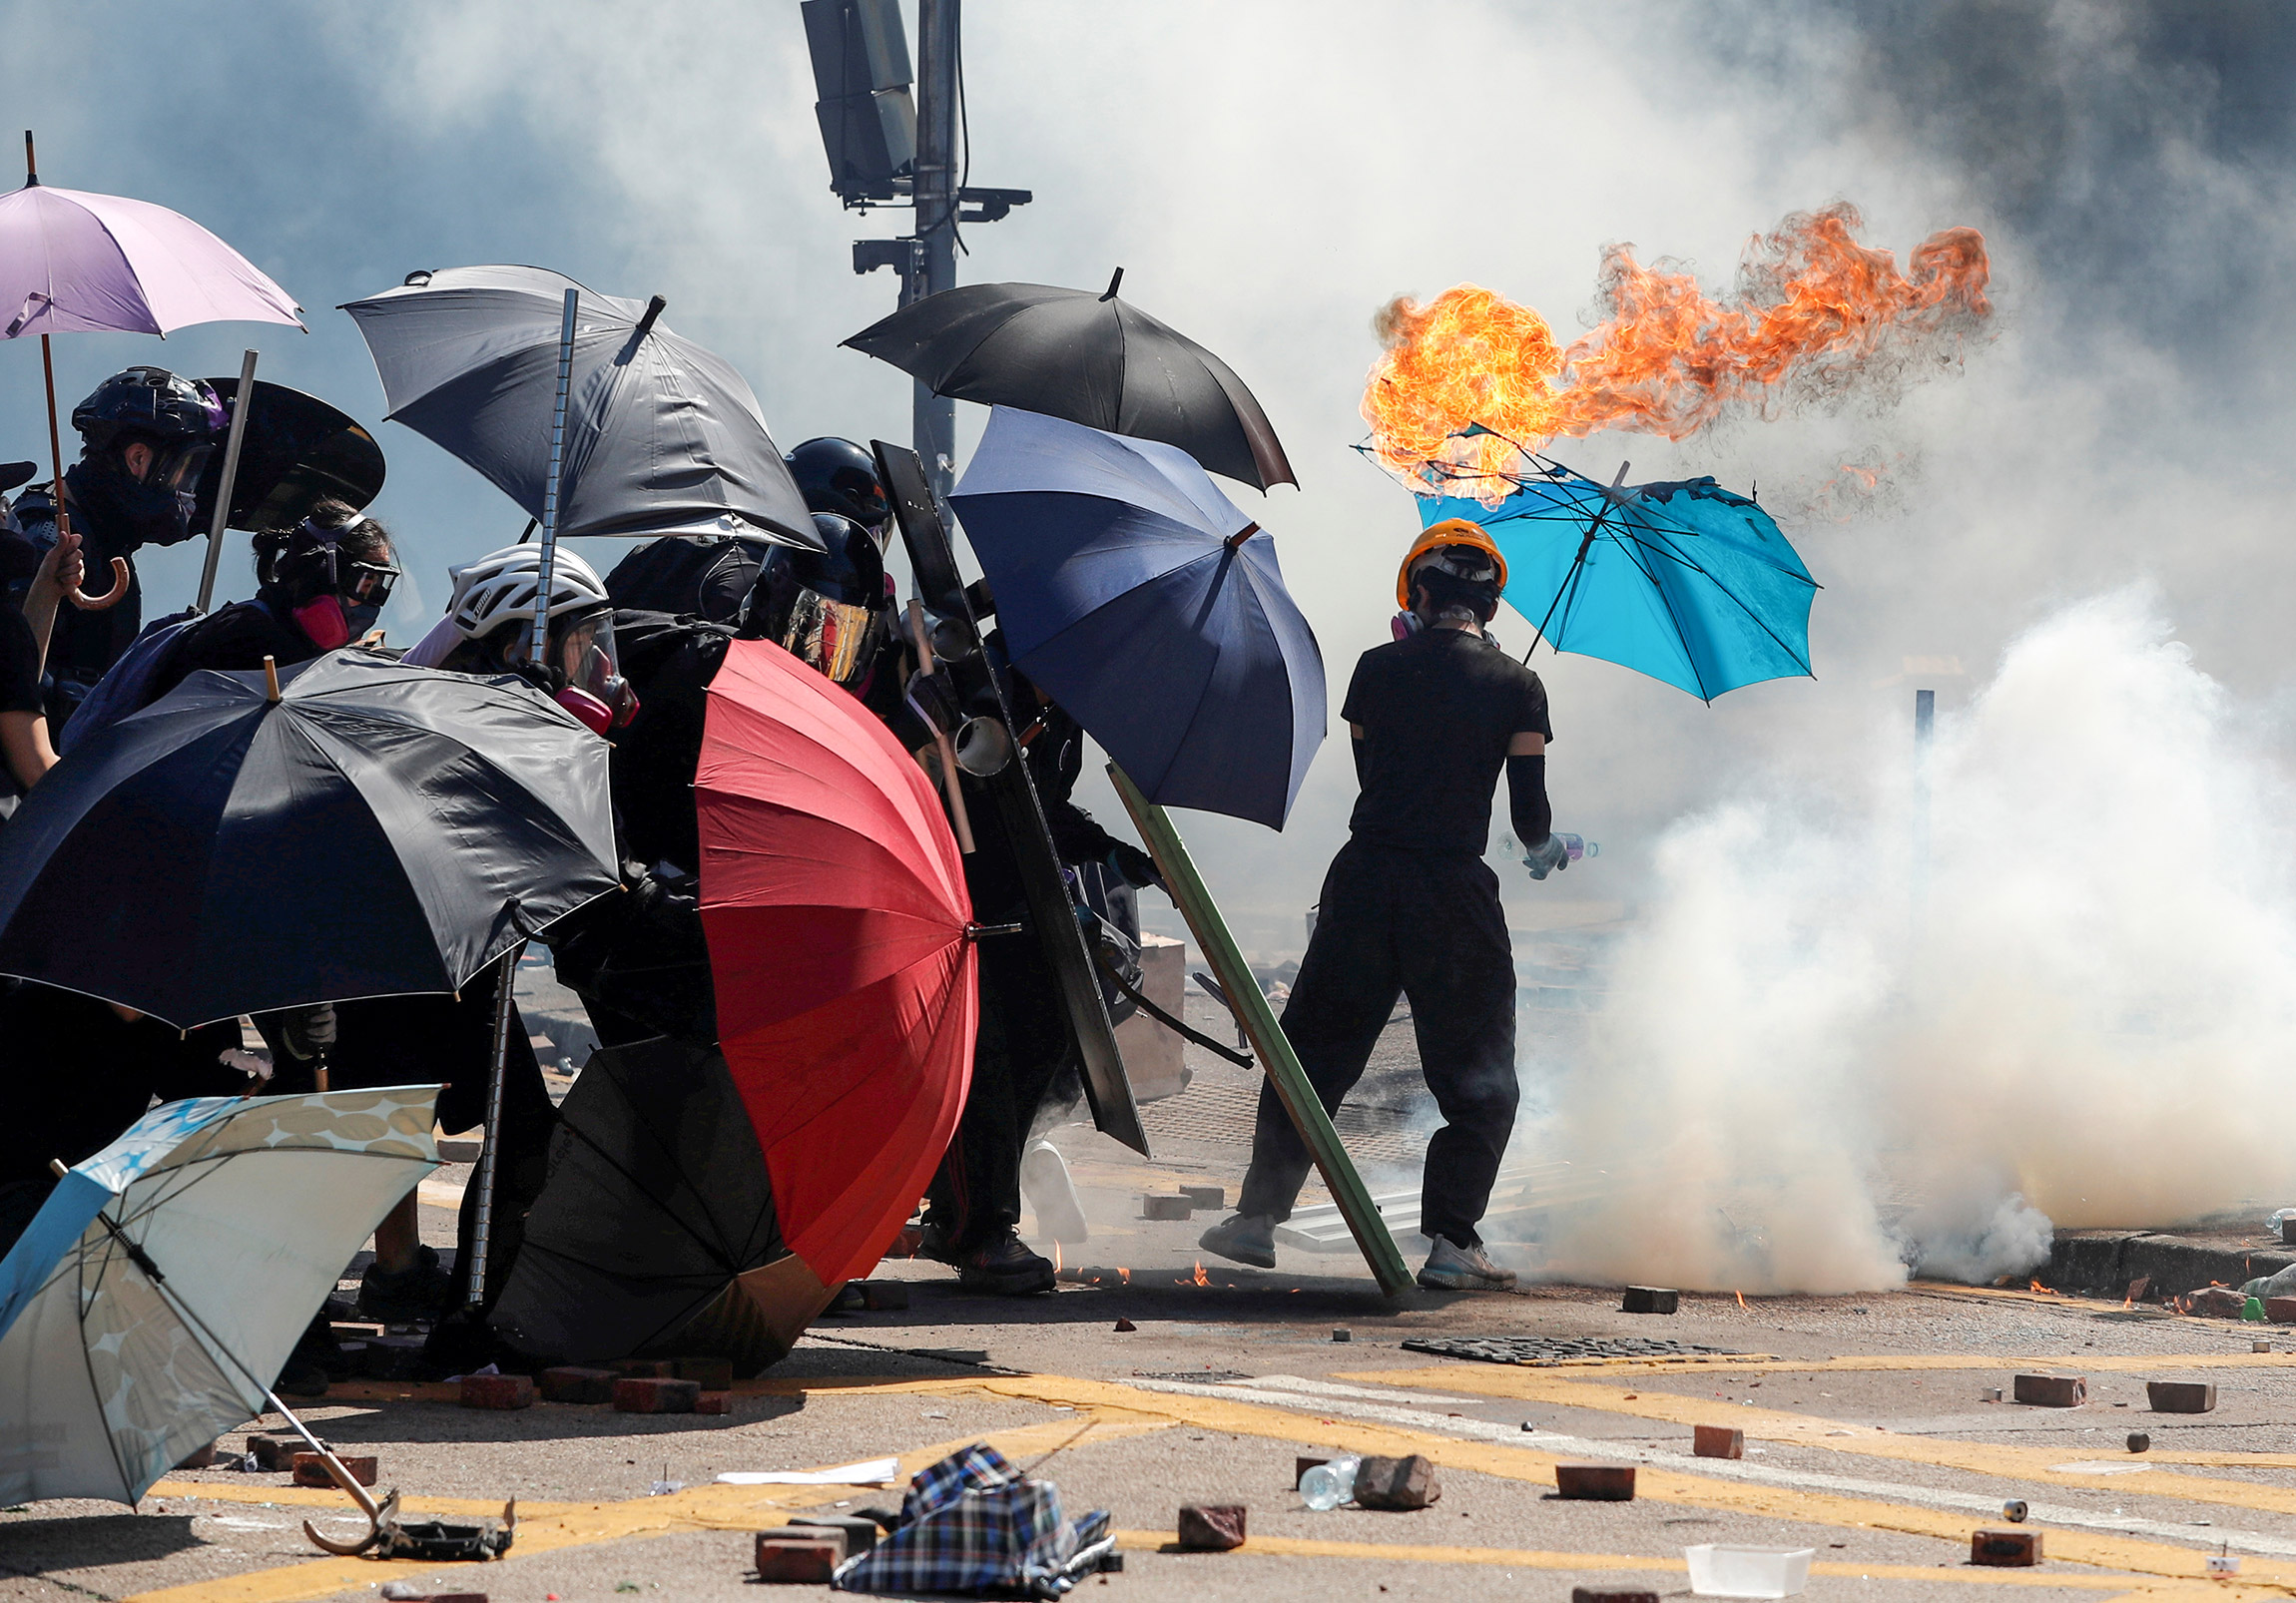 В начале июня в Гонконге начались протесты против принятия законопроекта об экстрадиции в Китай. По мнению активистов, новый закон мог быть использован против тех, чья деятельность не устраивает Пекин. На фоне непрекращающихся все лето протестов, переросших в беспорядки, законопроект был отозван​. Тем не менее, демонстрации не прекратились: митингующие стали требовать политических реформ, включая изменение избирательной системы и амнистию для политзаключенных